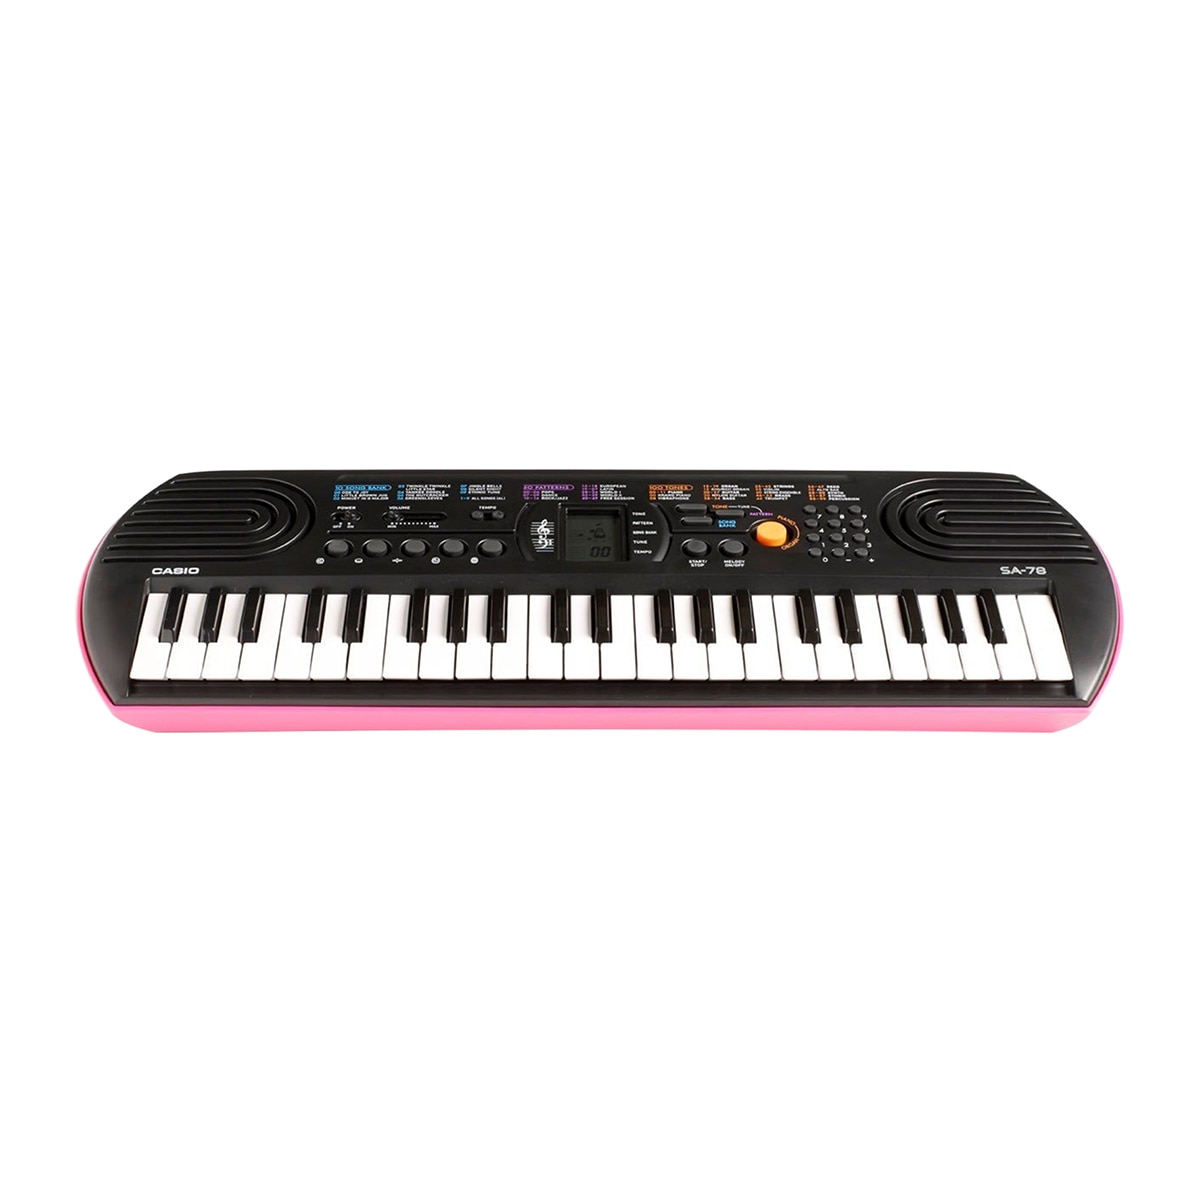 Casio teclado portátil rosa